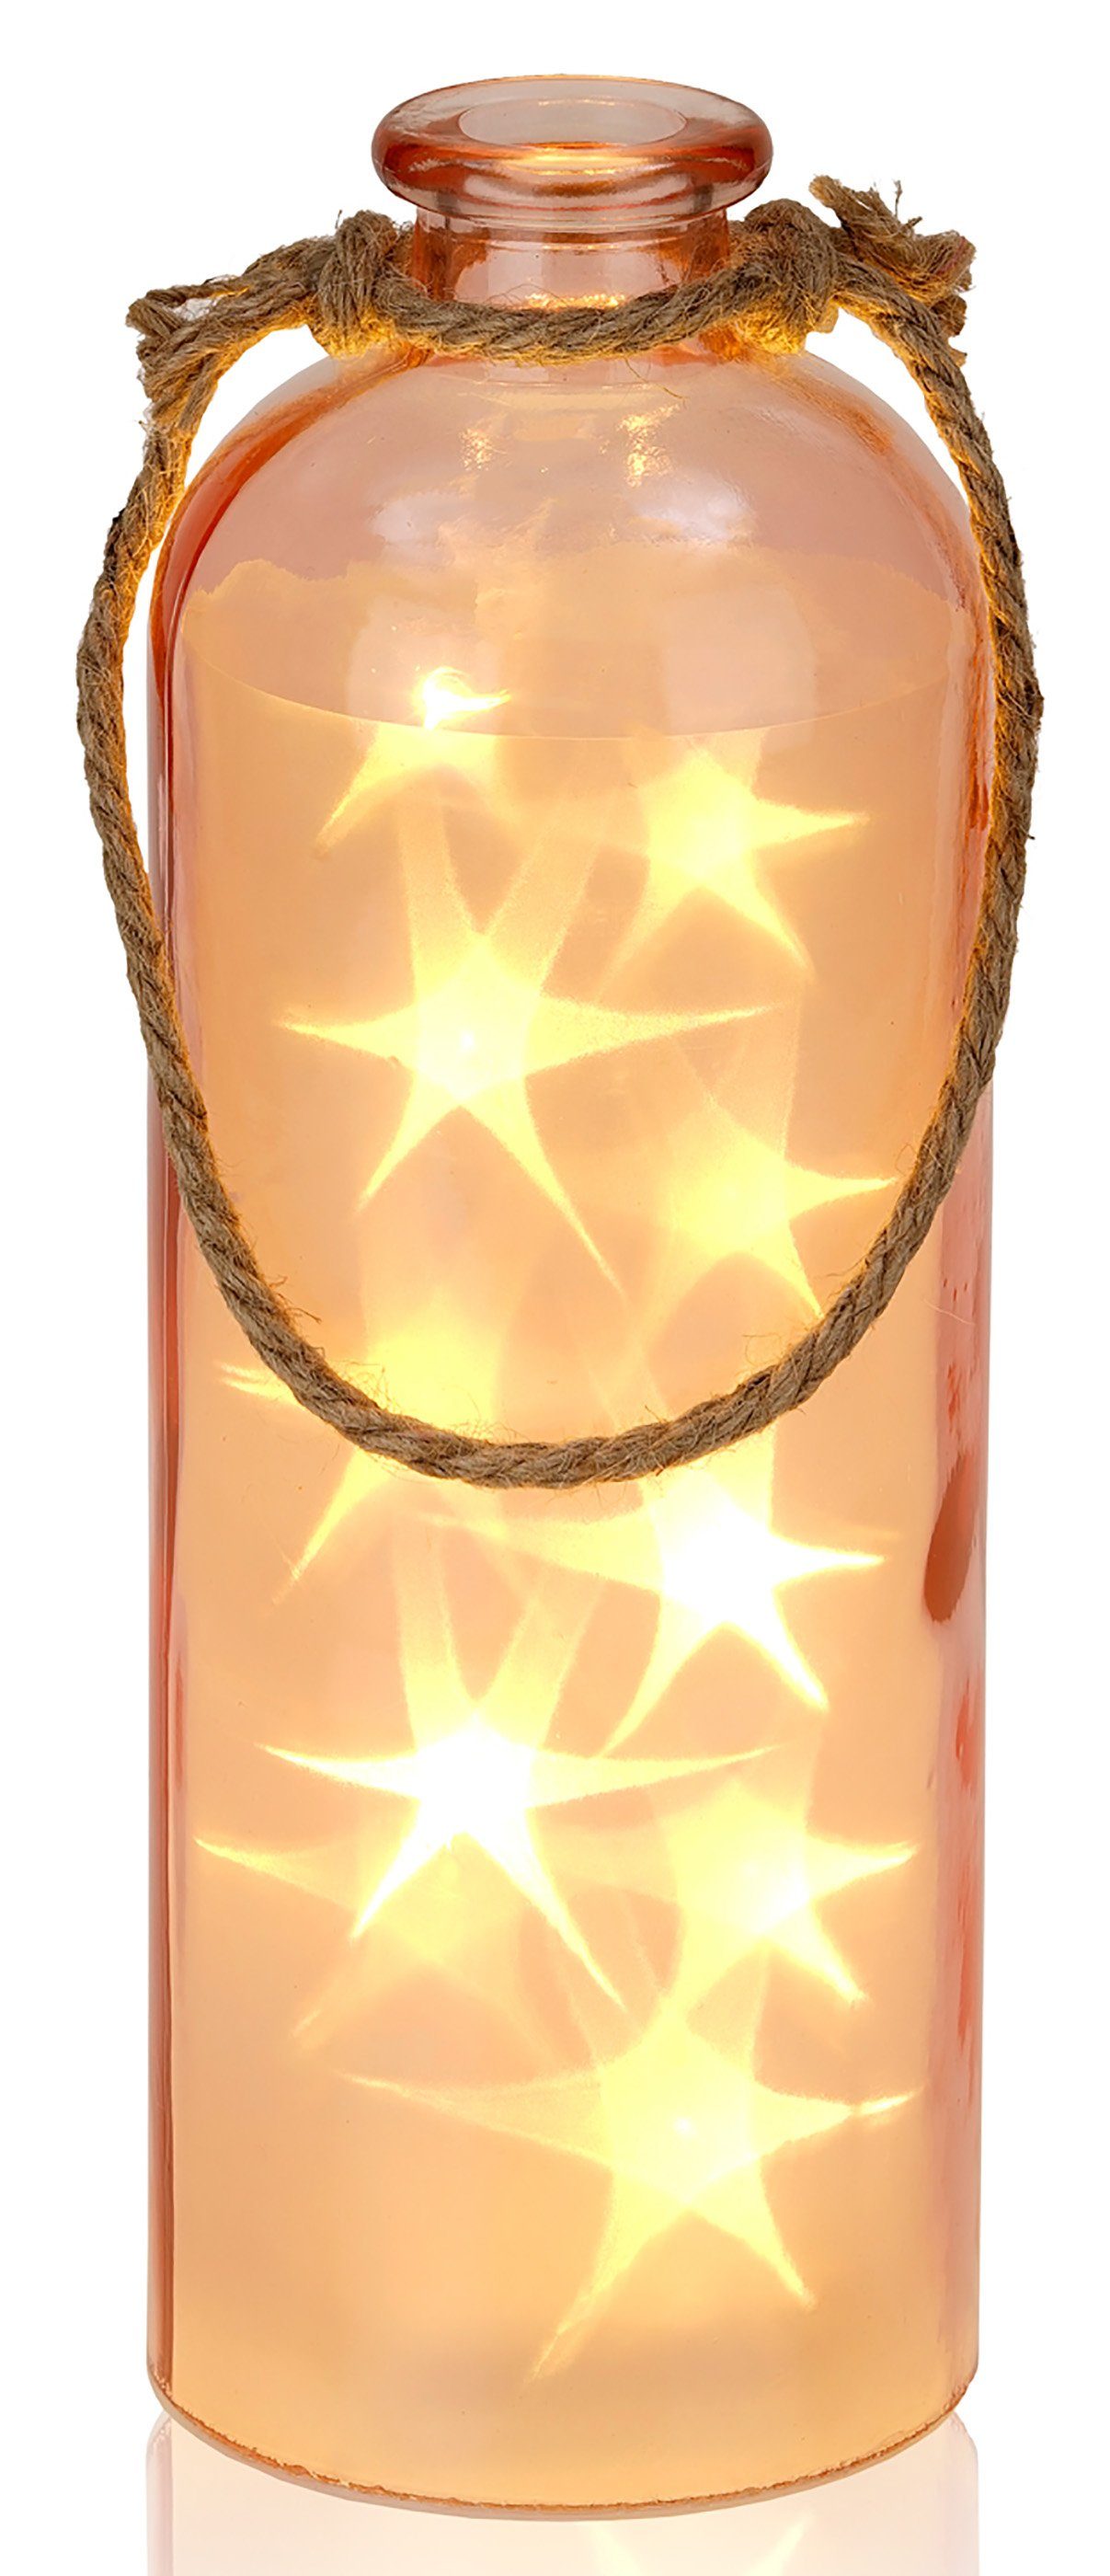 BRUBAKER LED Dekolicht Lichterflasche mit 10 LED Sternen, LED Lichterkette, Warmweiß, Dekoleuchte, Party Licht Deko, Höhe 31,5 cm Rosa